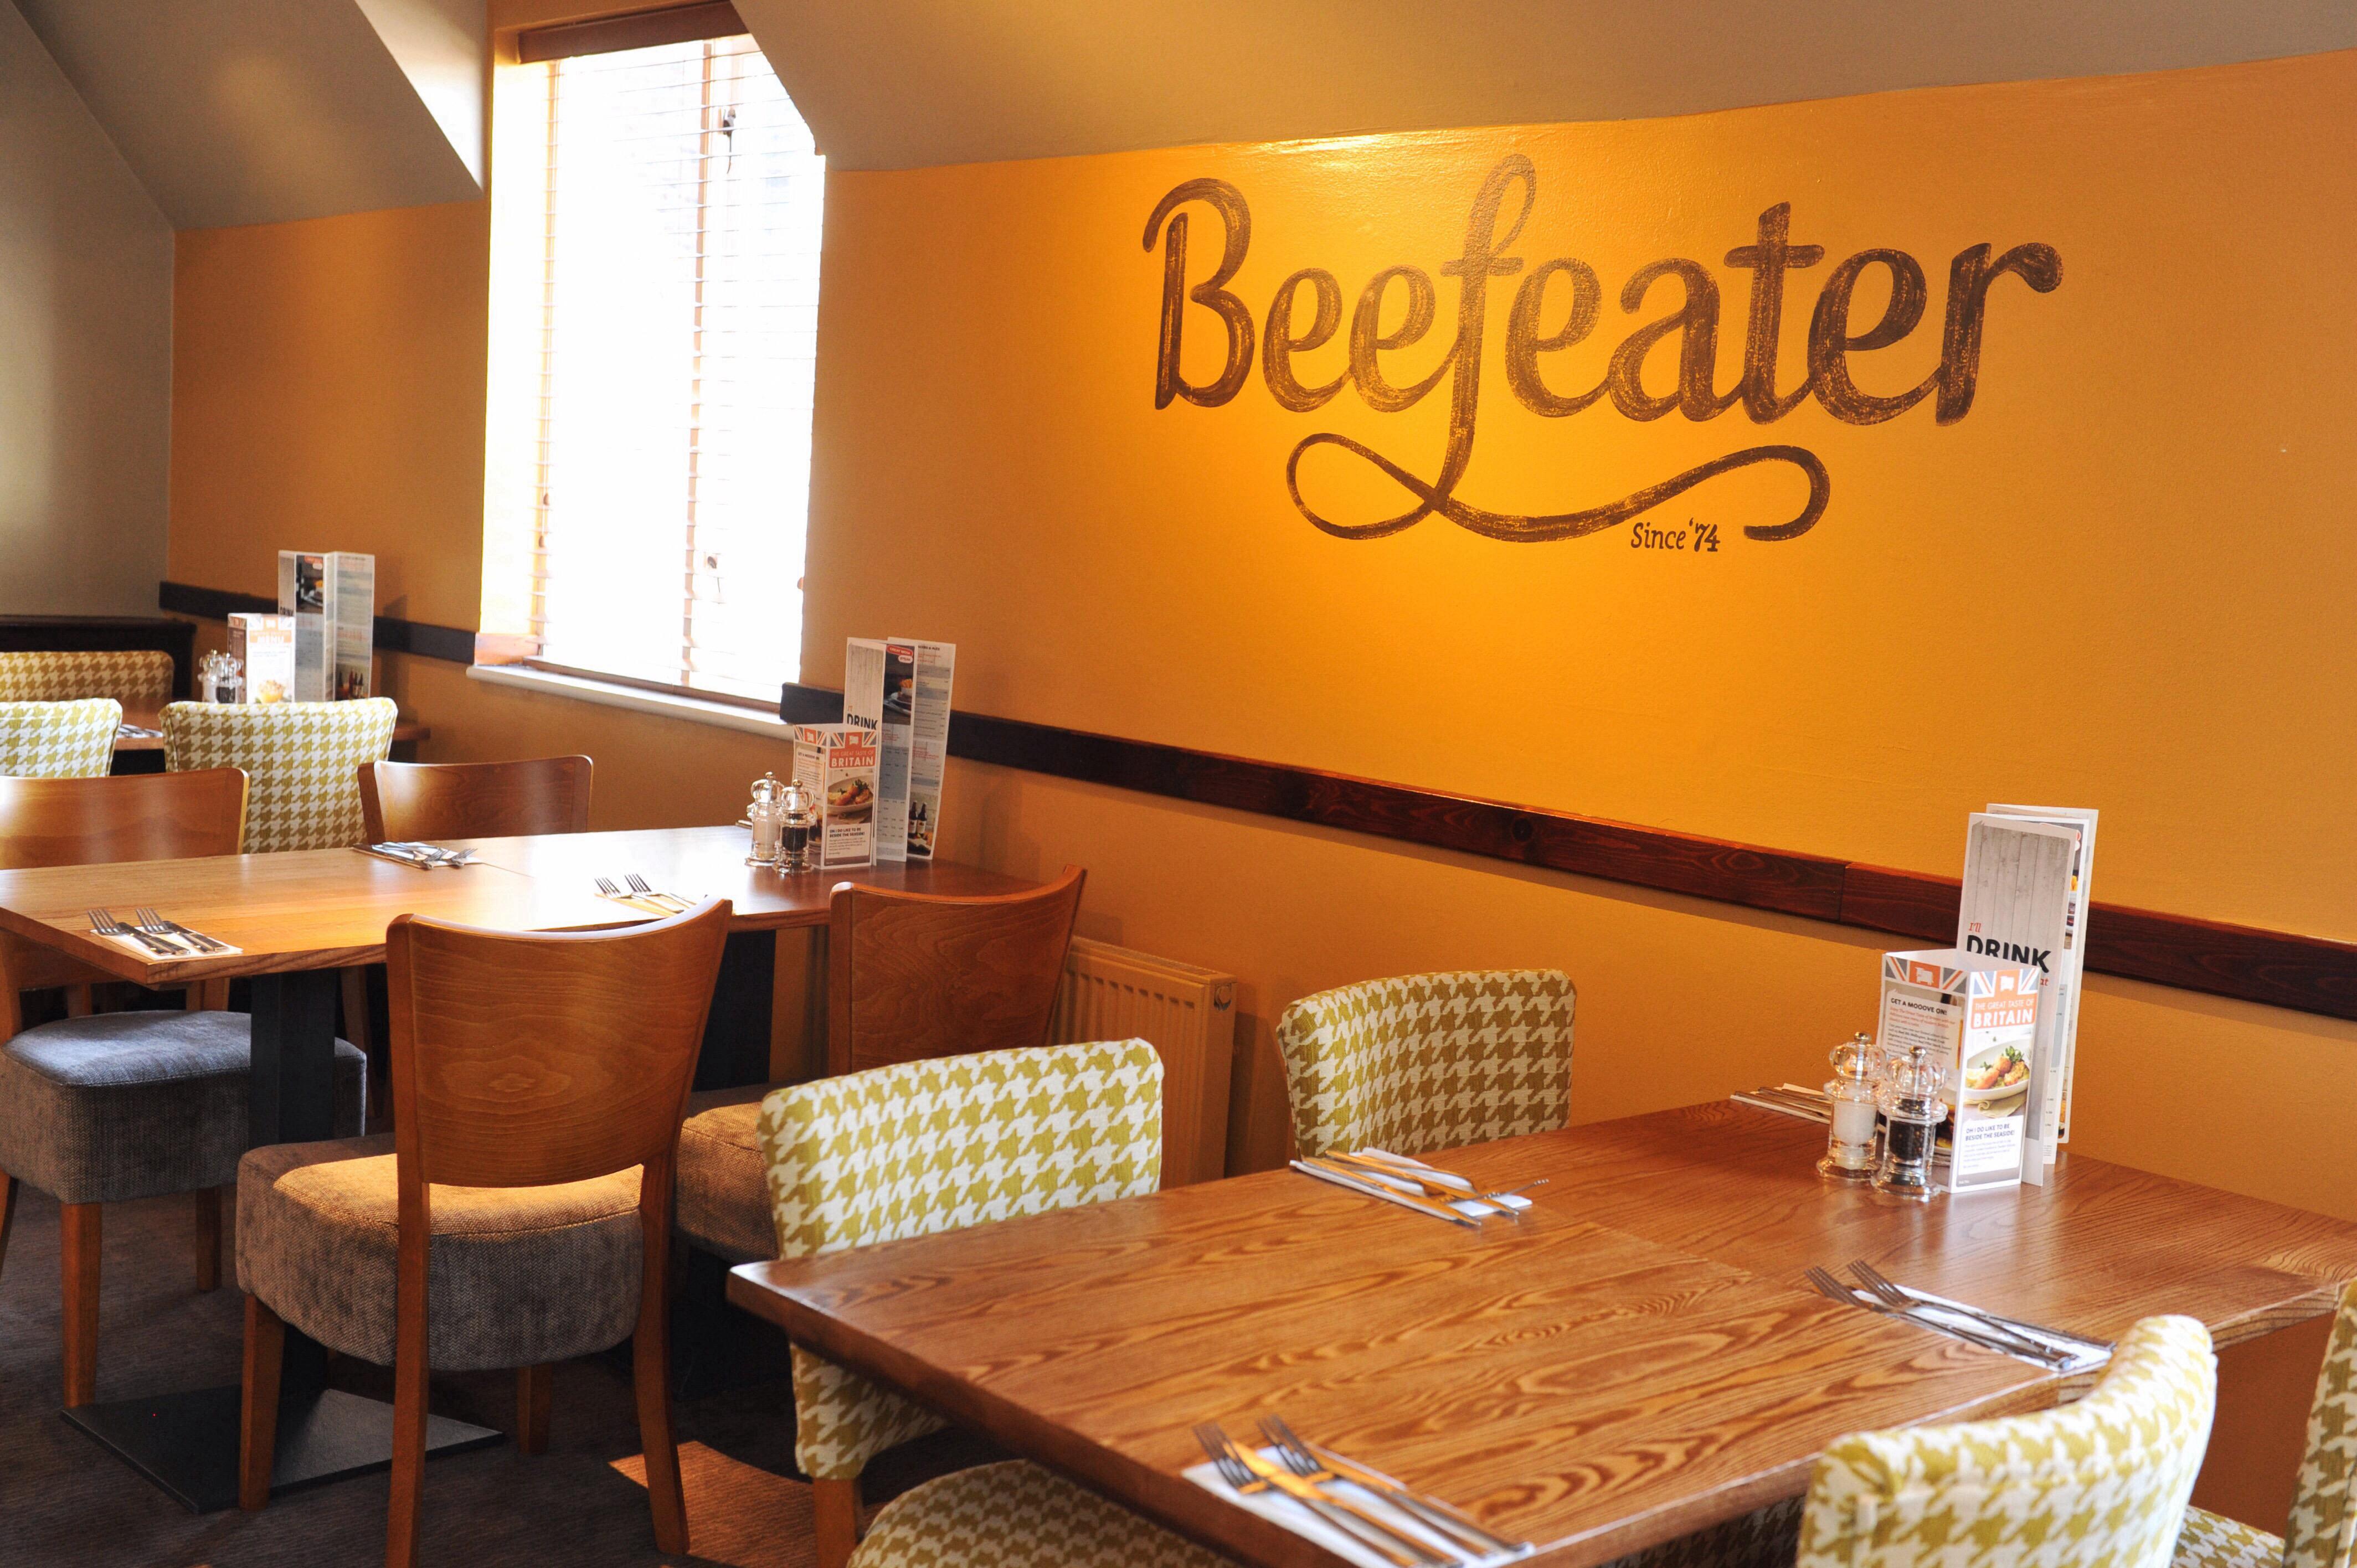 Beefeater restaurant interior Premier Inn Ipswich South hotel Ipswich 03330 031741